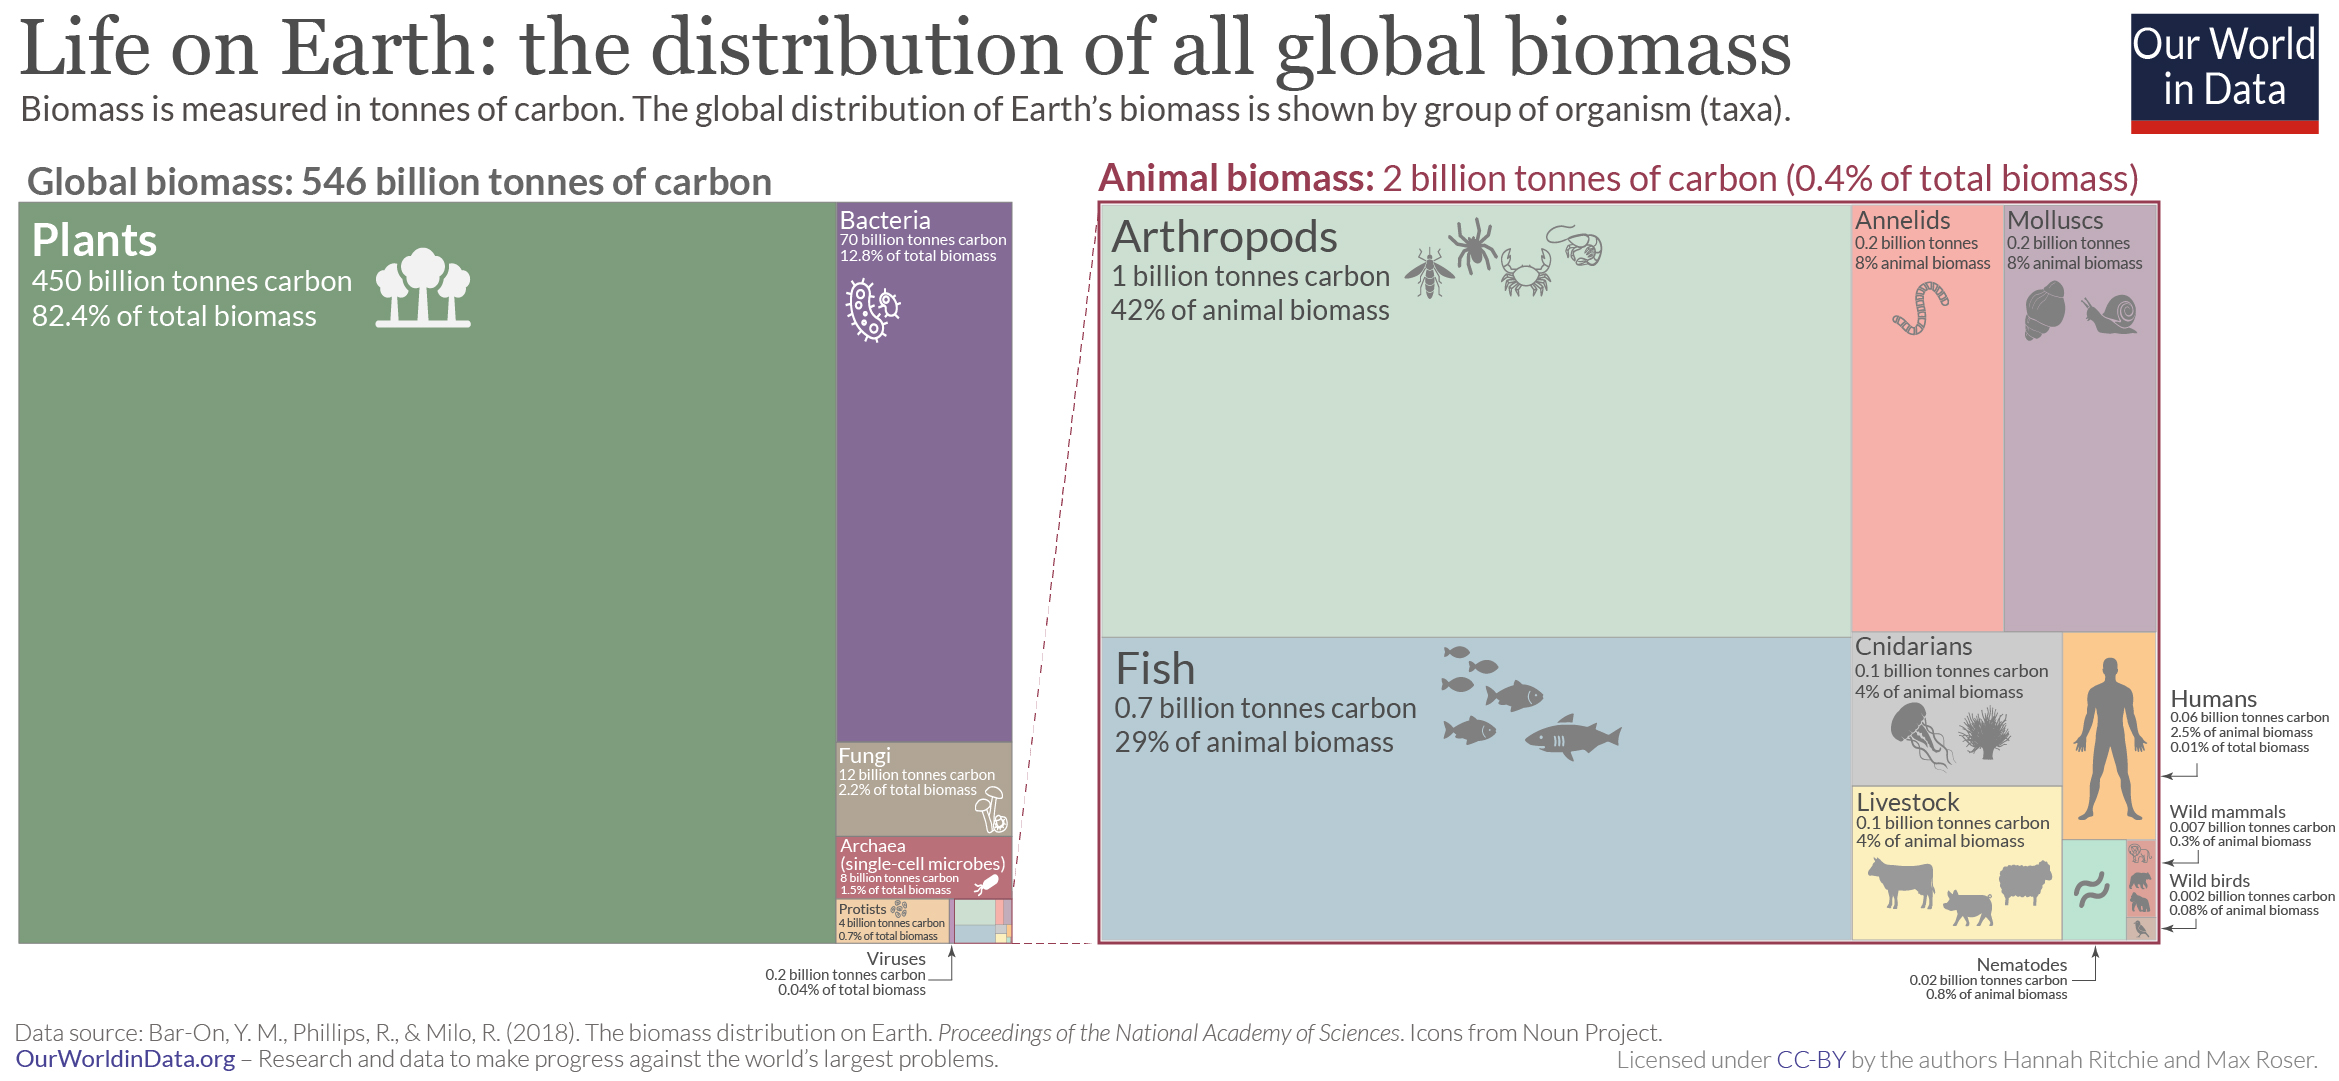 Distribusi biomassa secara global. Sumber: Our World in Data